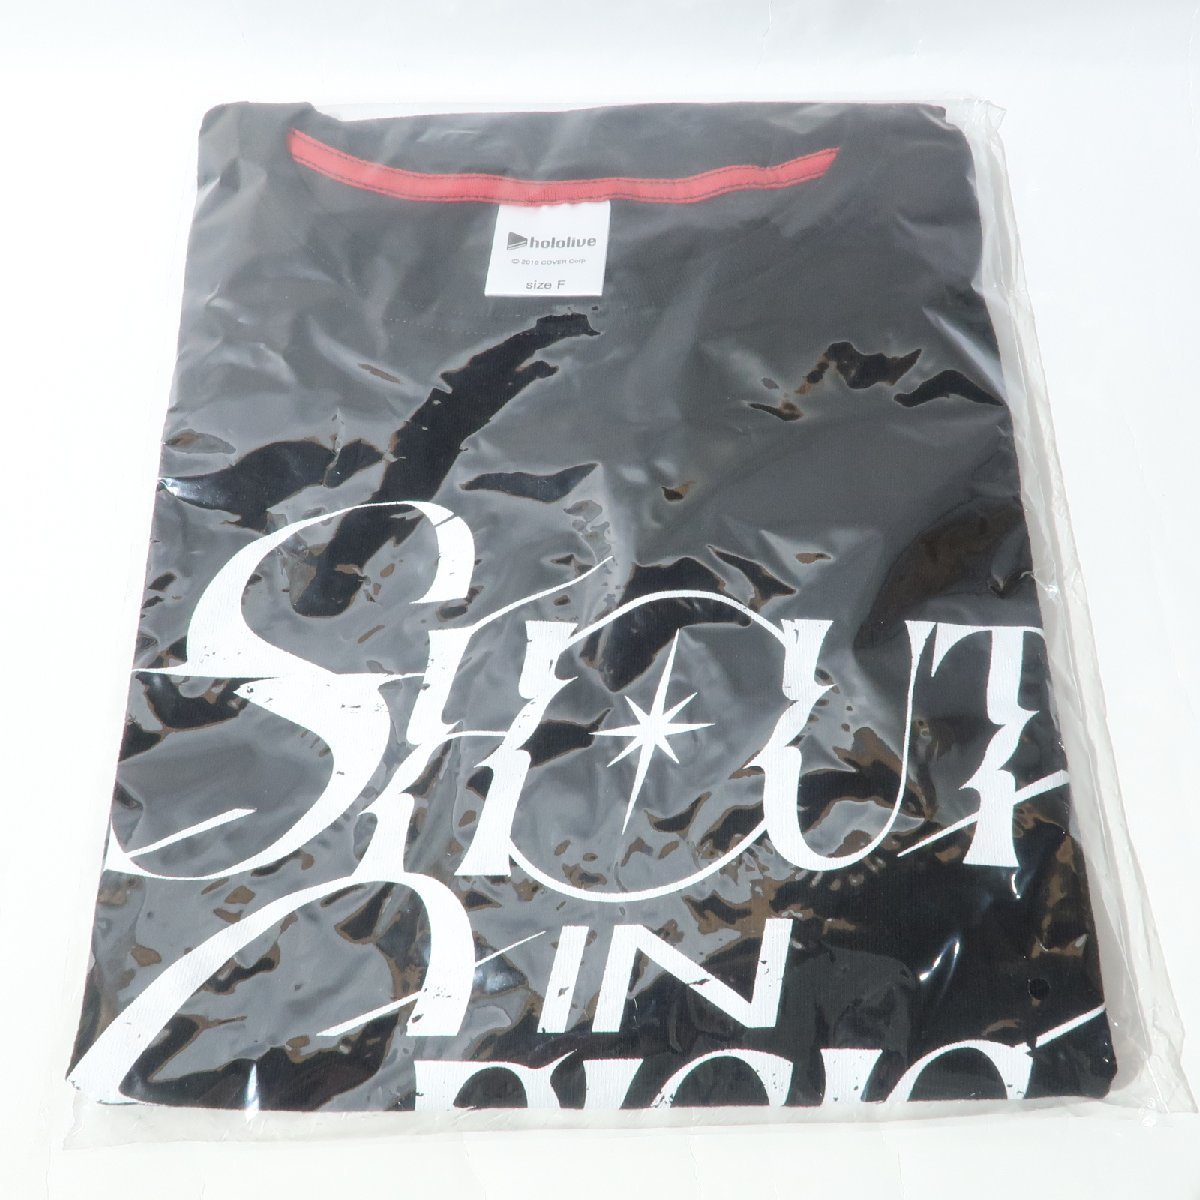 ホロライブ/VTuber 星街すいせい 2nd Solo Live ”Shout in Crisis” T-shirt Black(Tシャツ ブラック) 【未使用】